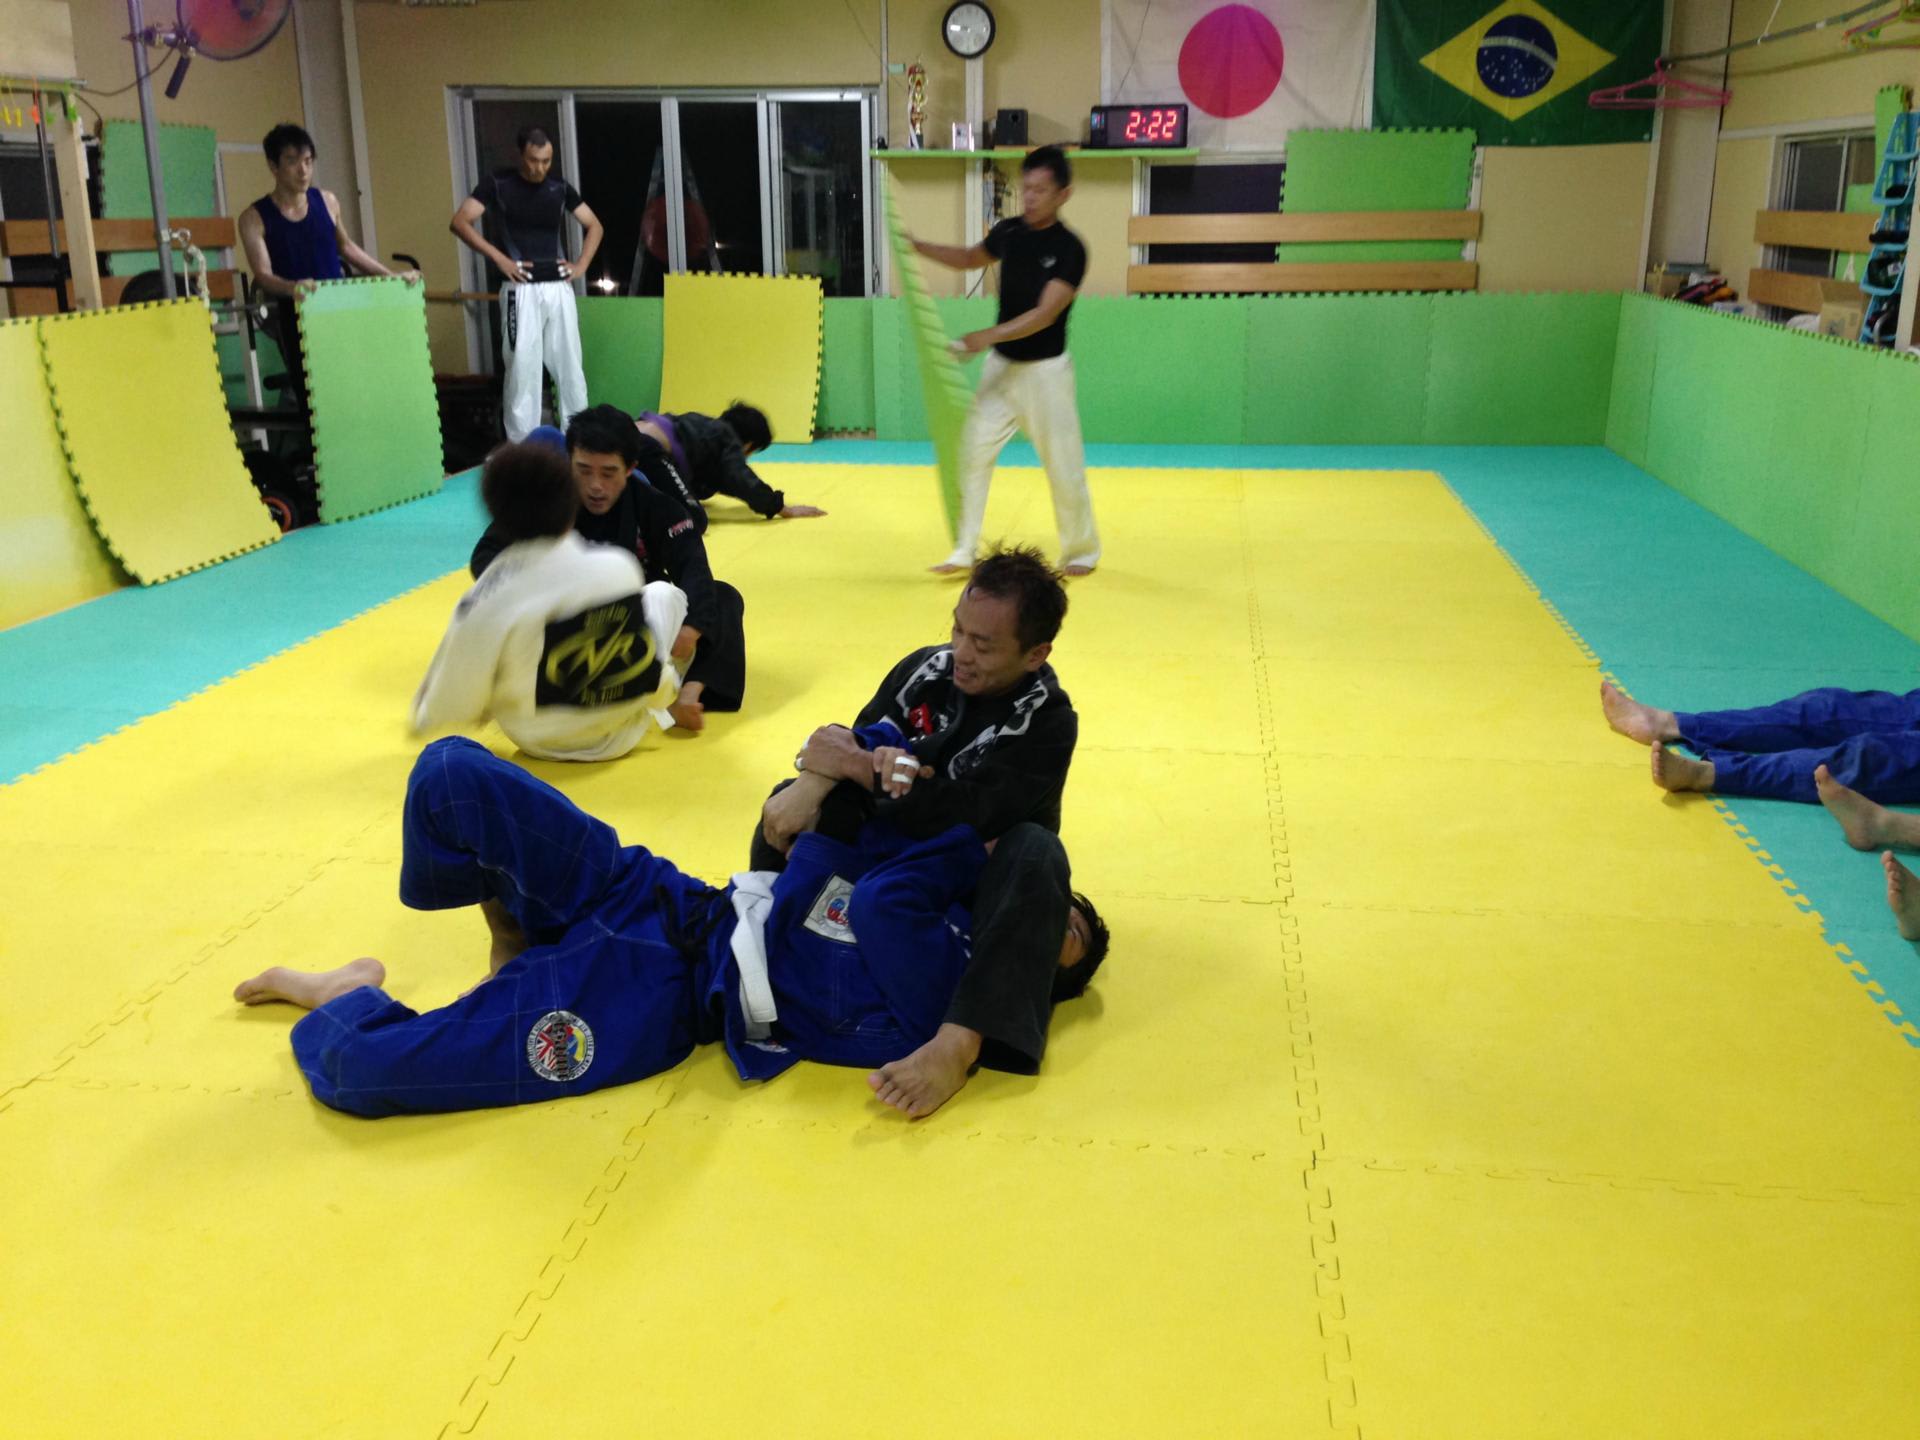 Nr柔術のスケジュールが変わりました 奈良でブラジリアン柔術 格闘技 ーnr柔術ー ブラジリアン柔術 グラップリング